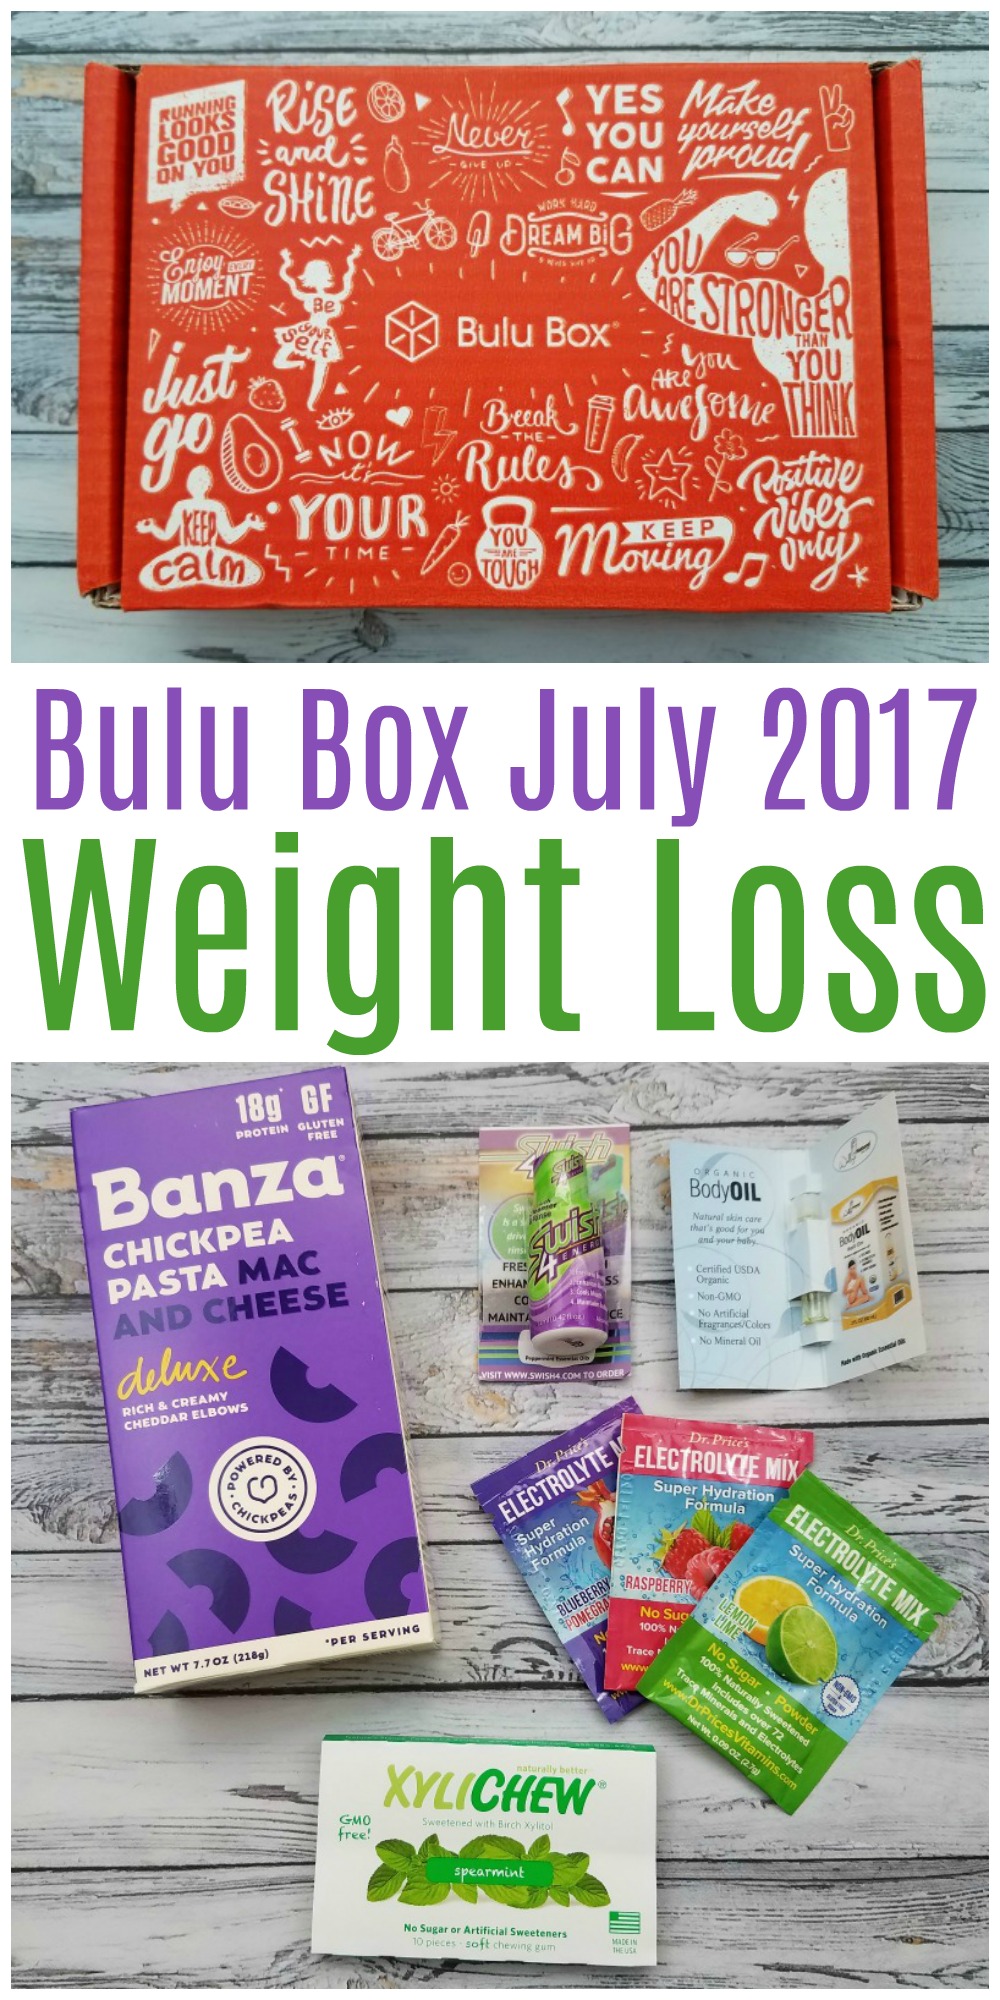 Bulu Box Weight Loss July 2017